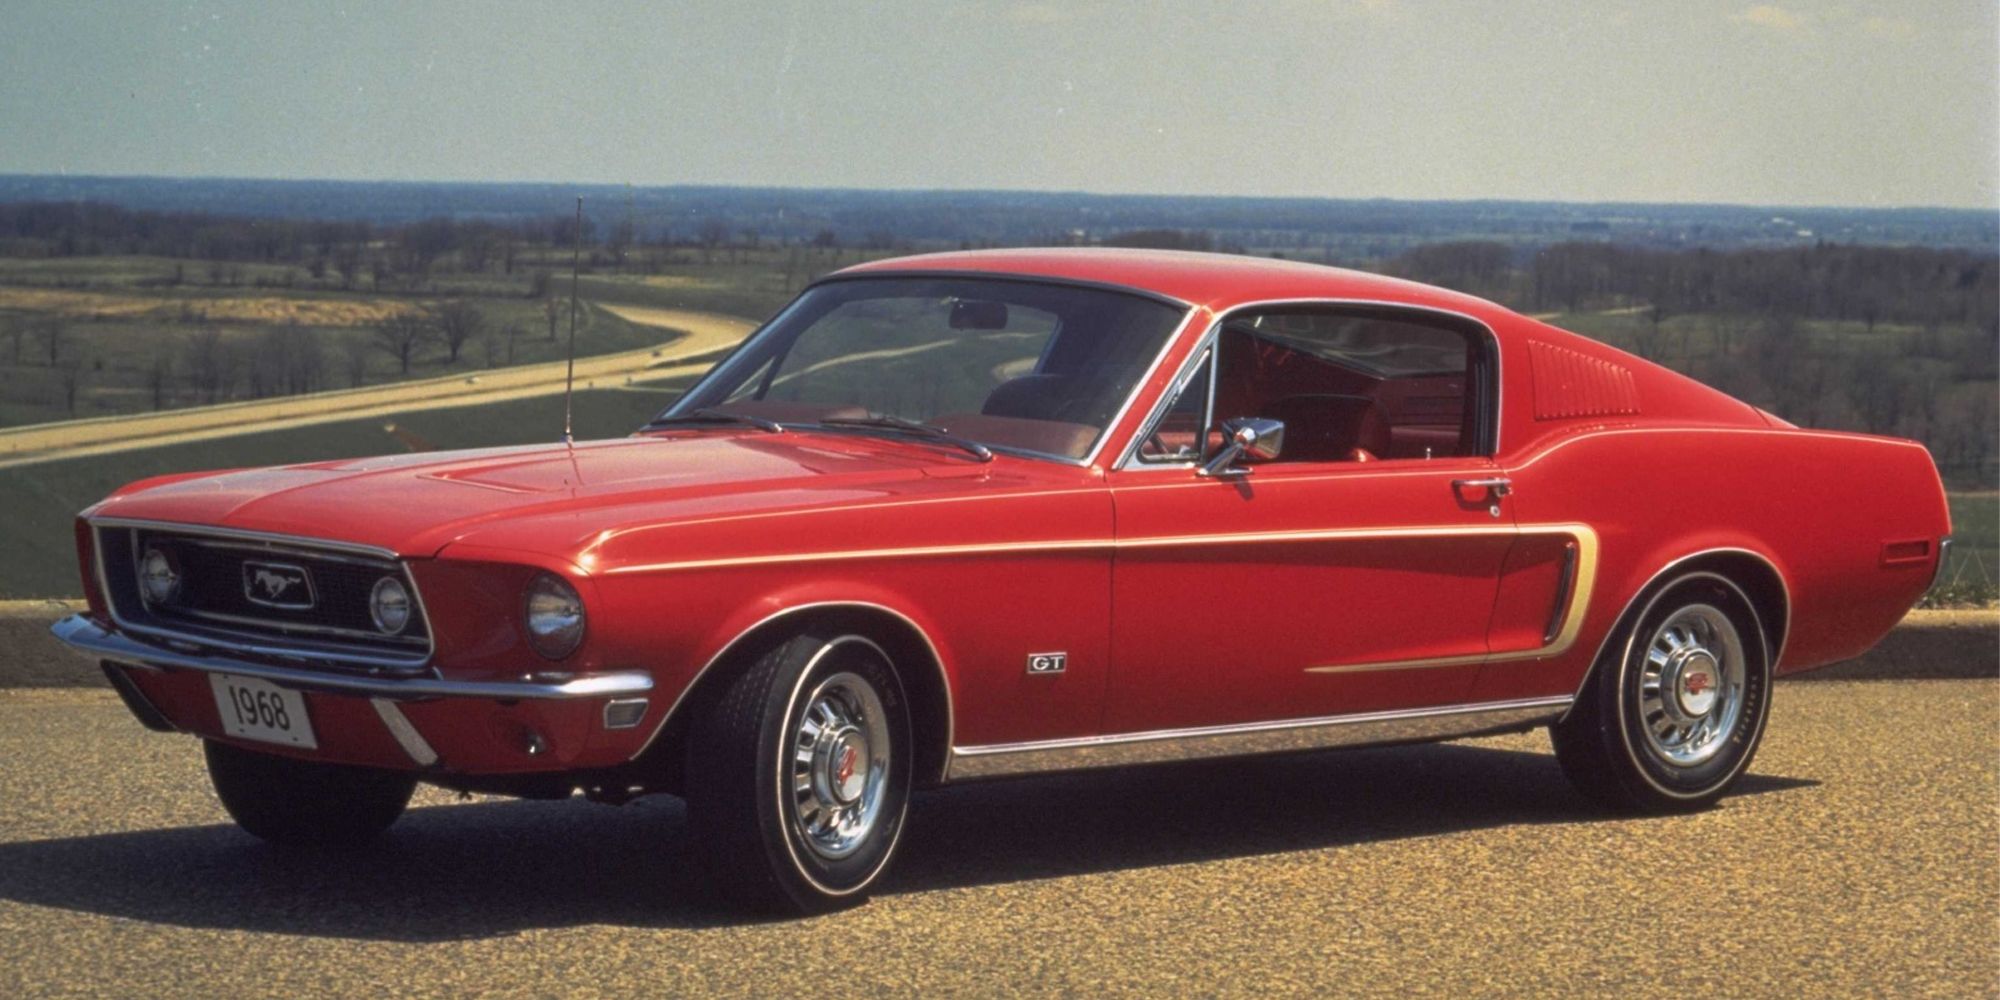 A red first-gen Mustang